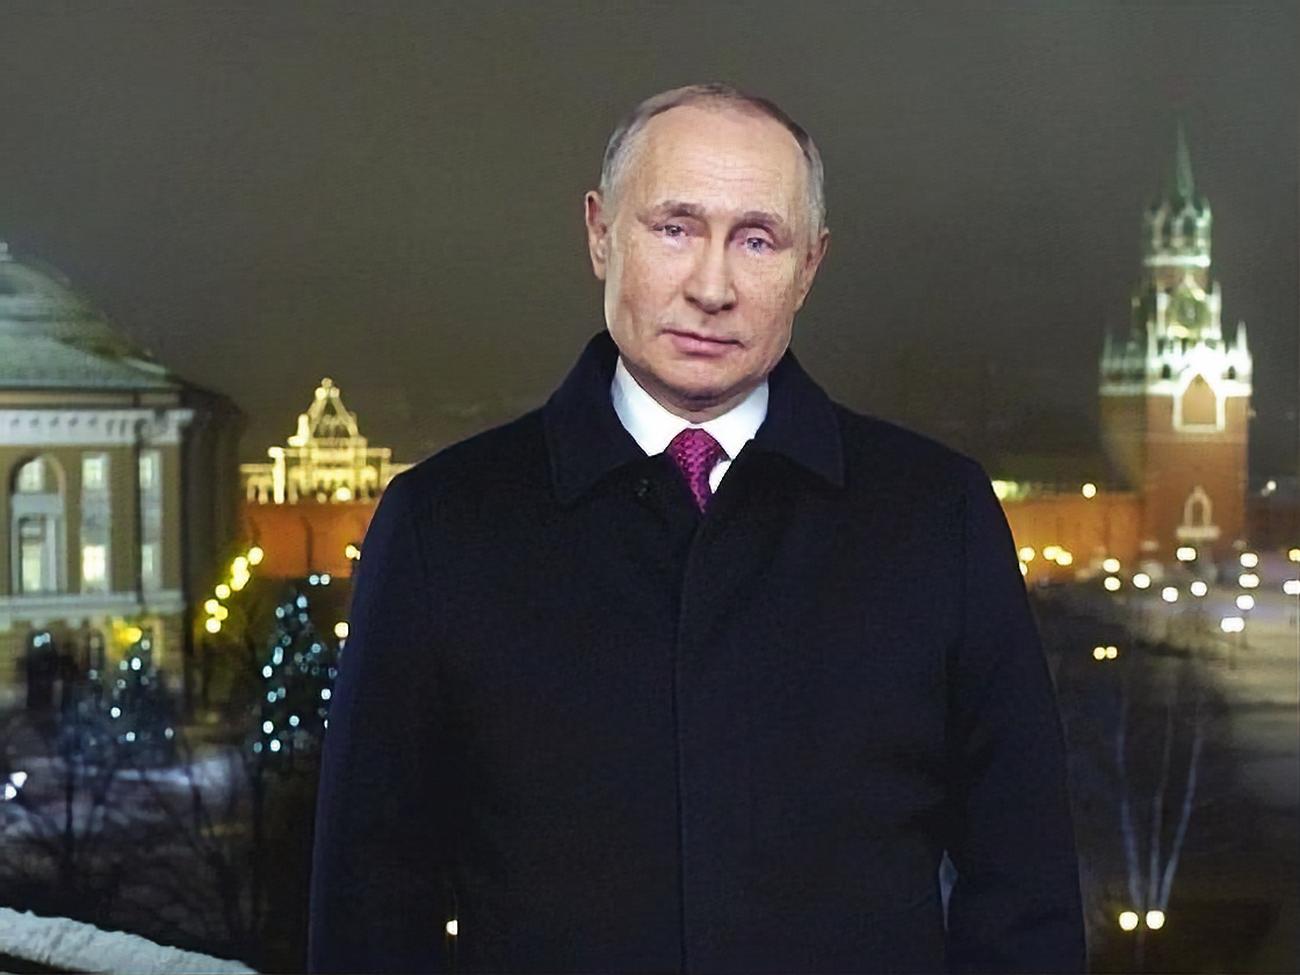 Путин Поздравление Видео 2021